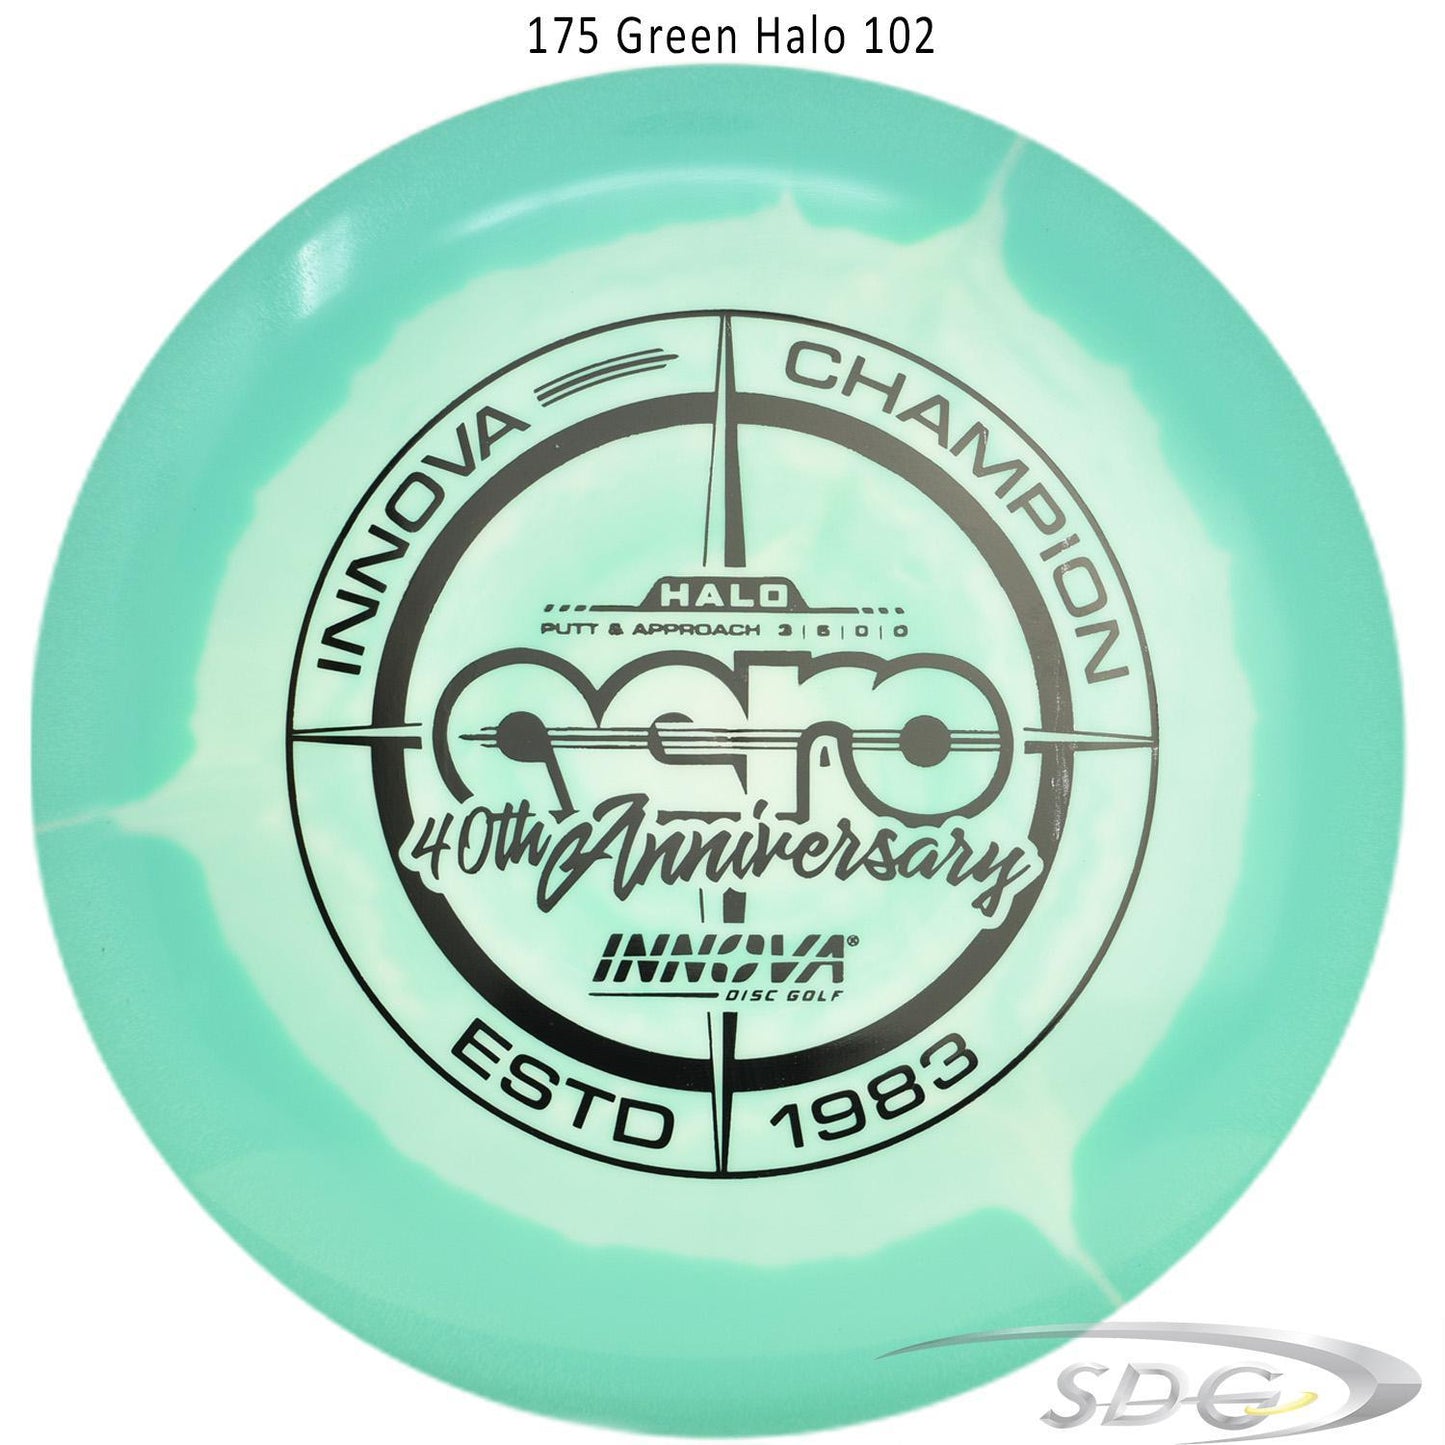 innova-halo-star-aero-40th-anniversary-le-disc-golf-putter 175 Green Halo 102 